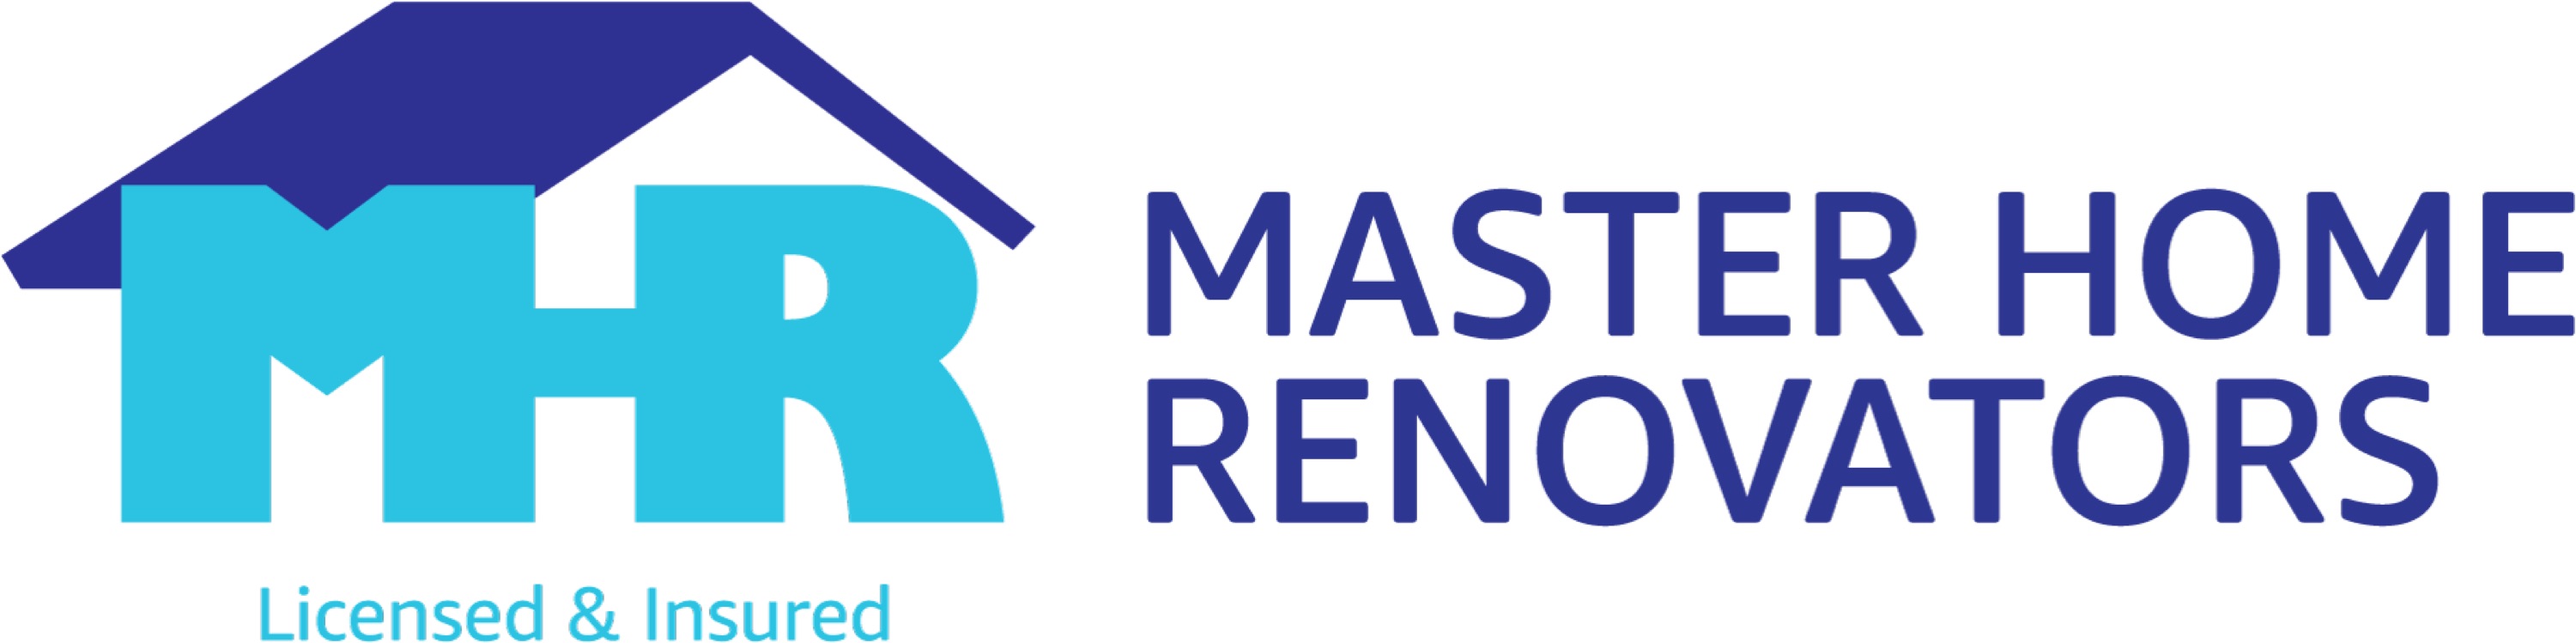 Master Home Renovators LLC Logo